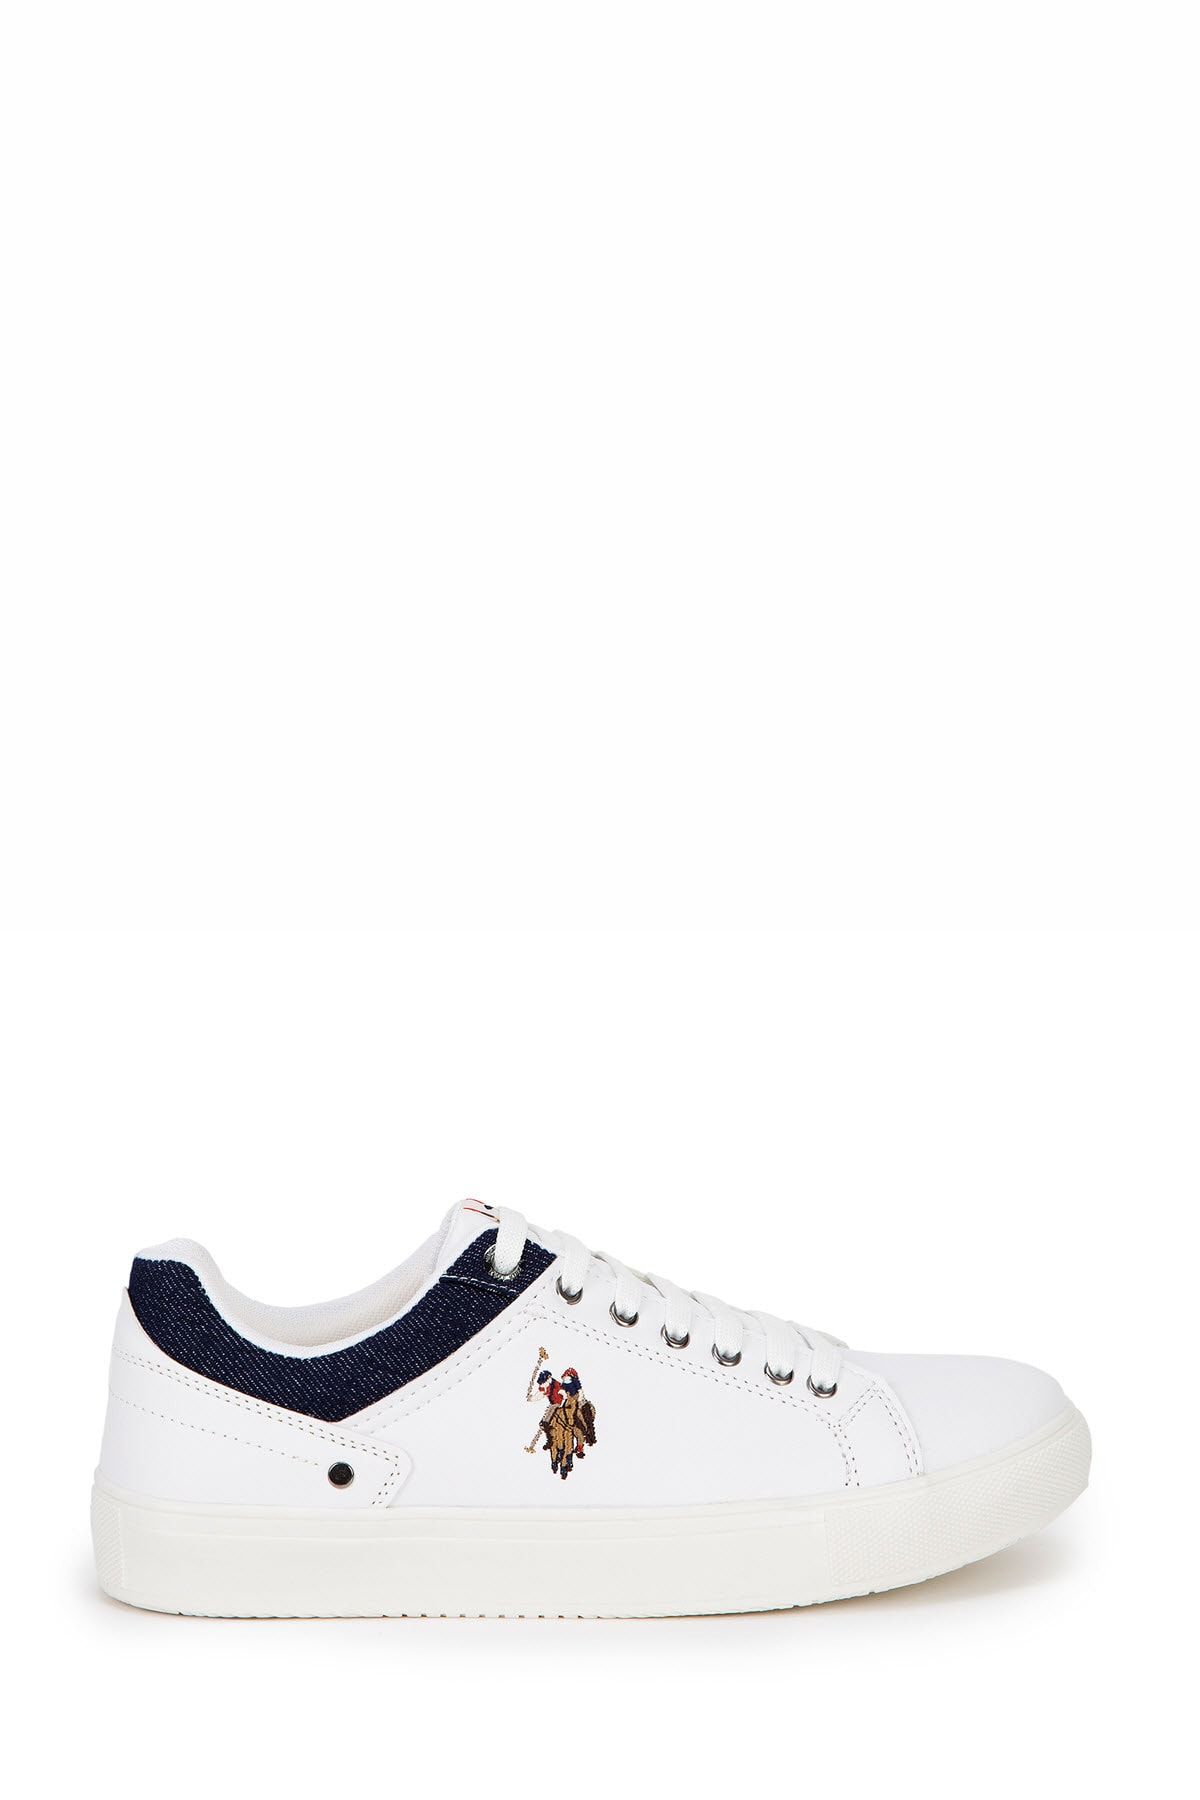 U.S. Polo Assn. Beyaz Erkek Ayakkabı